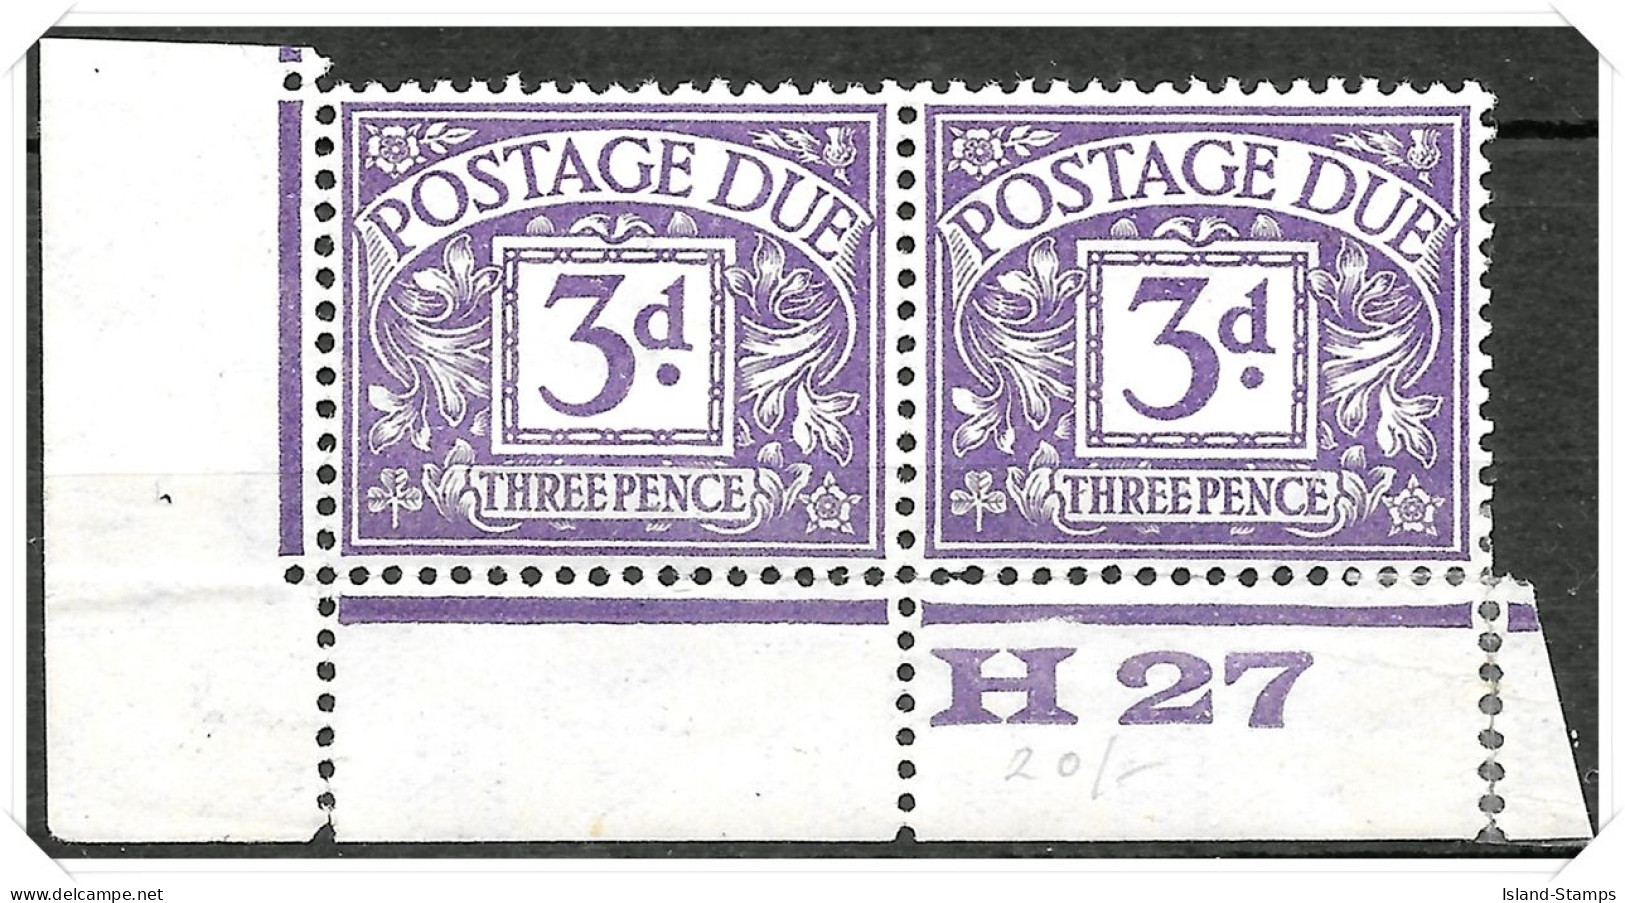 D14 1924-33 Block Cypher Watermark Postage Dues Mounted Mint Hrd2d - Impuestos